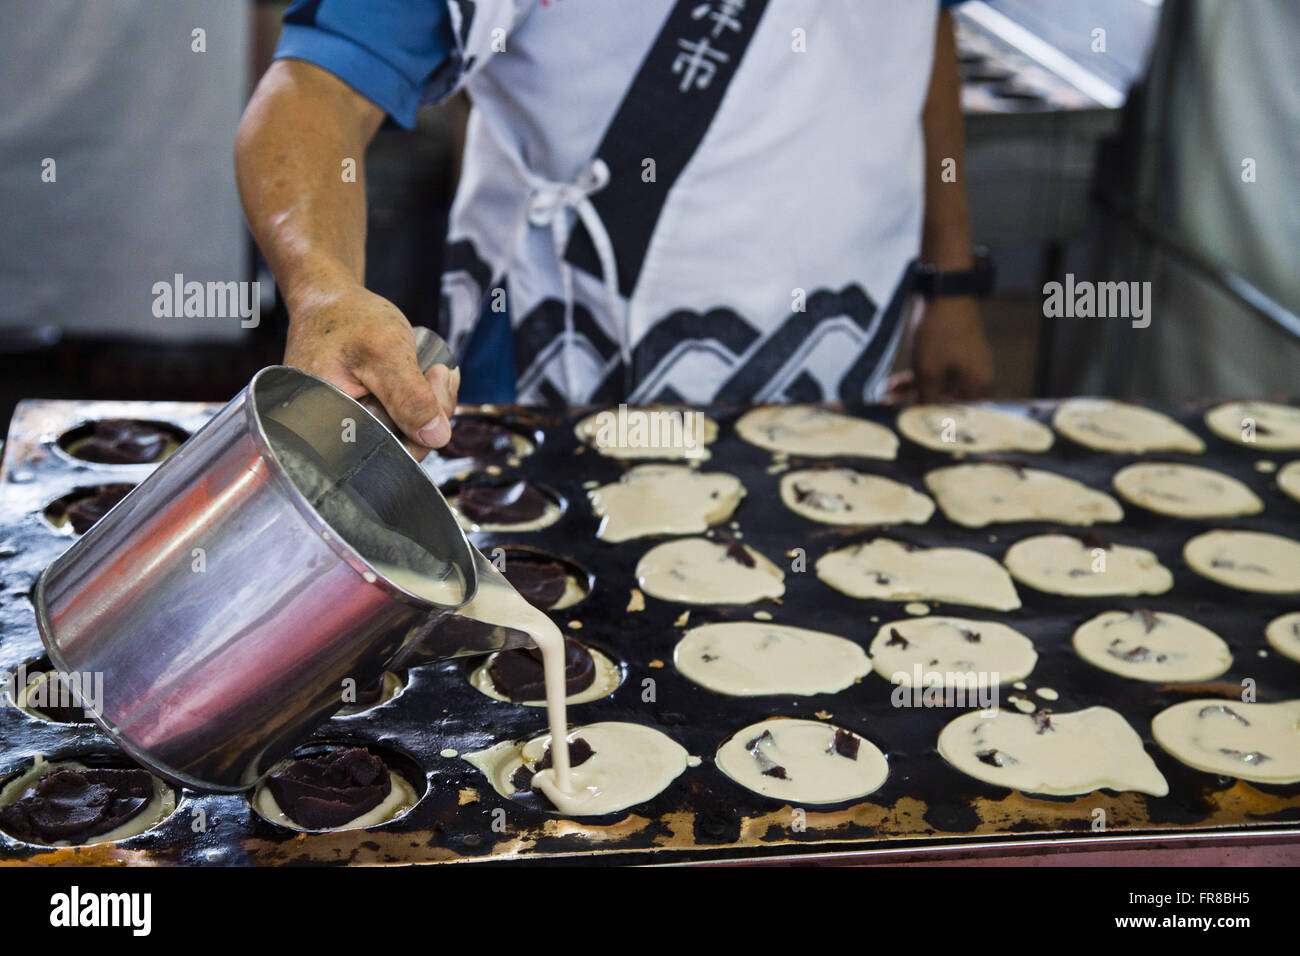 L'uomo la preparazione di dolci fagioli azuki chiamato imagawayaki Foto Stock